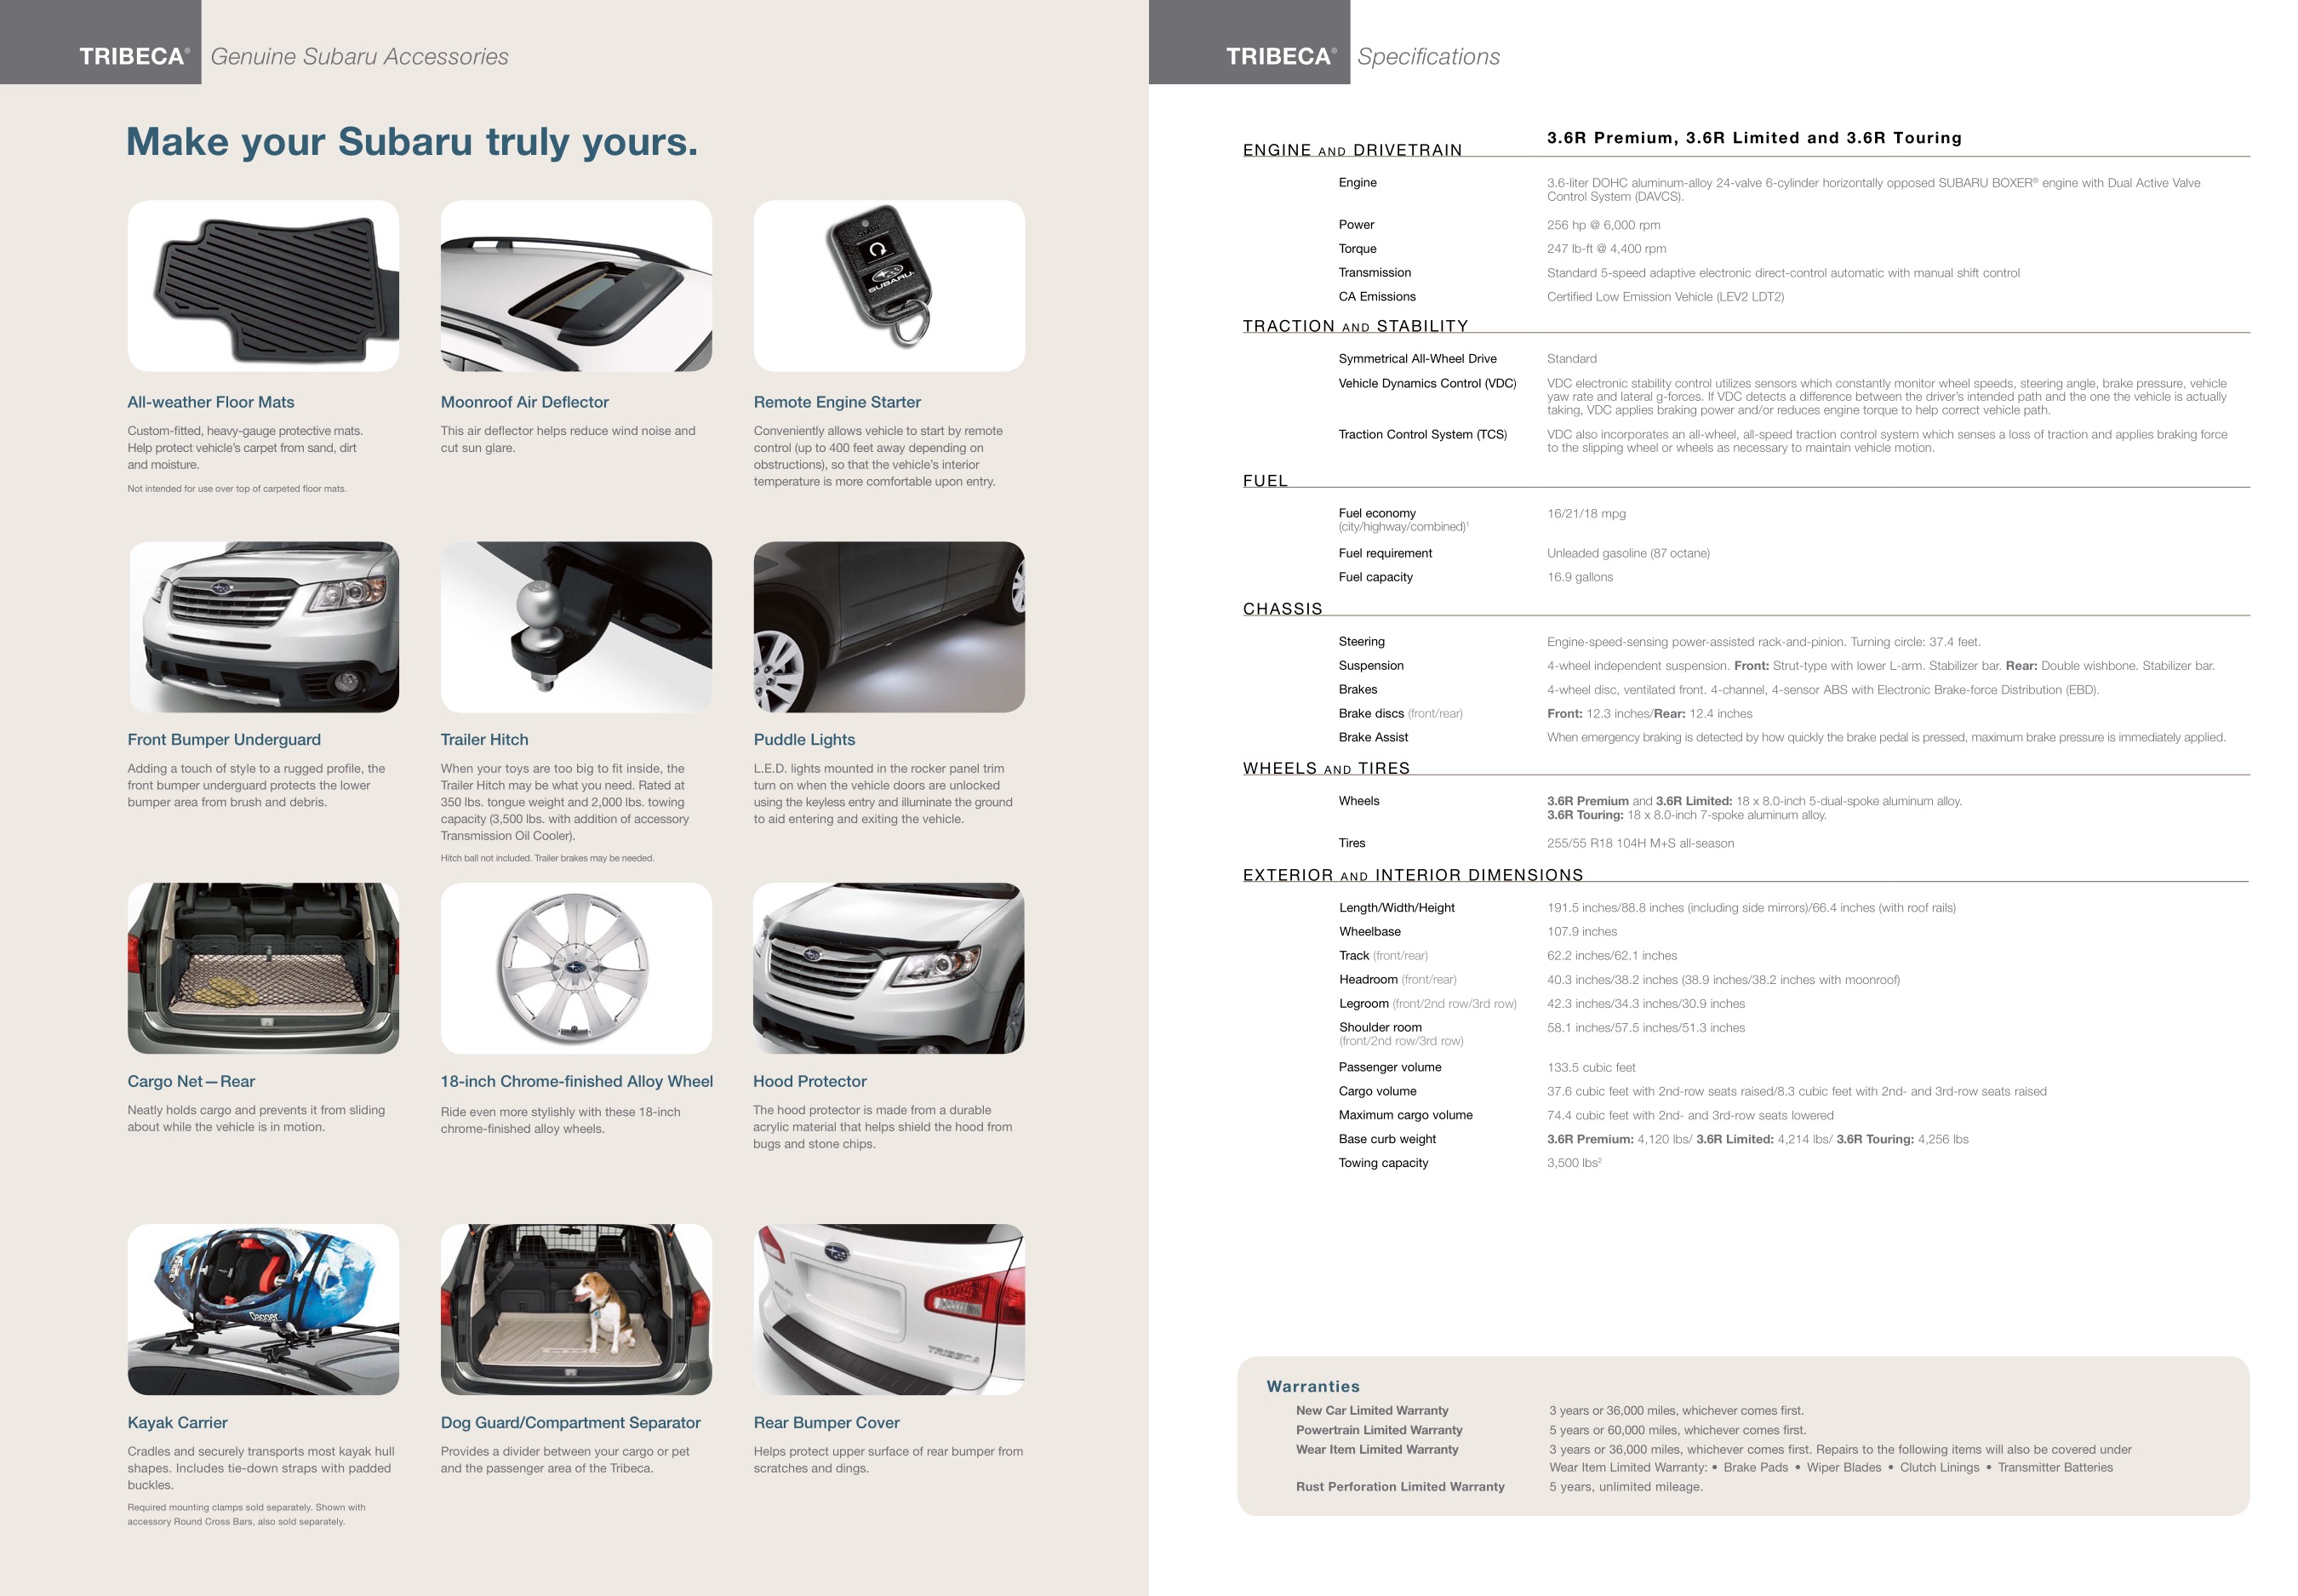 2011 Subaru Tribeca Brochure Page 16